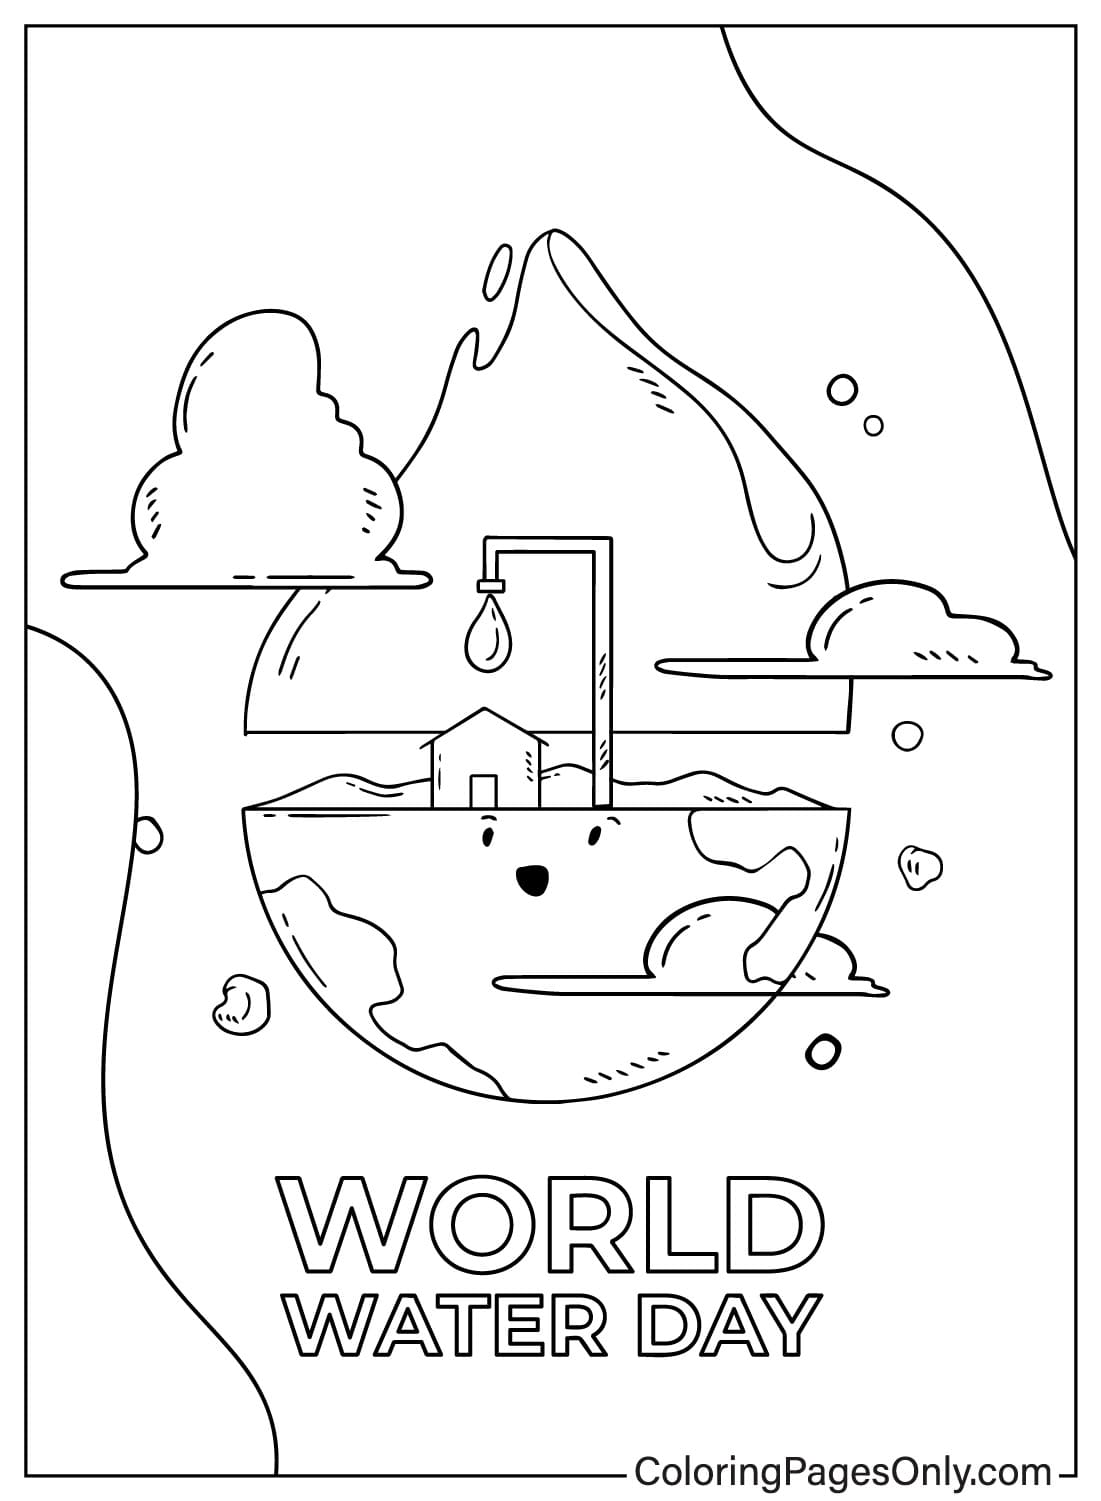 كتاب تلوين يوم المياه العالمي من يوم المياه العالمي